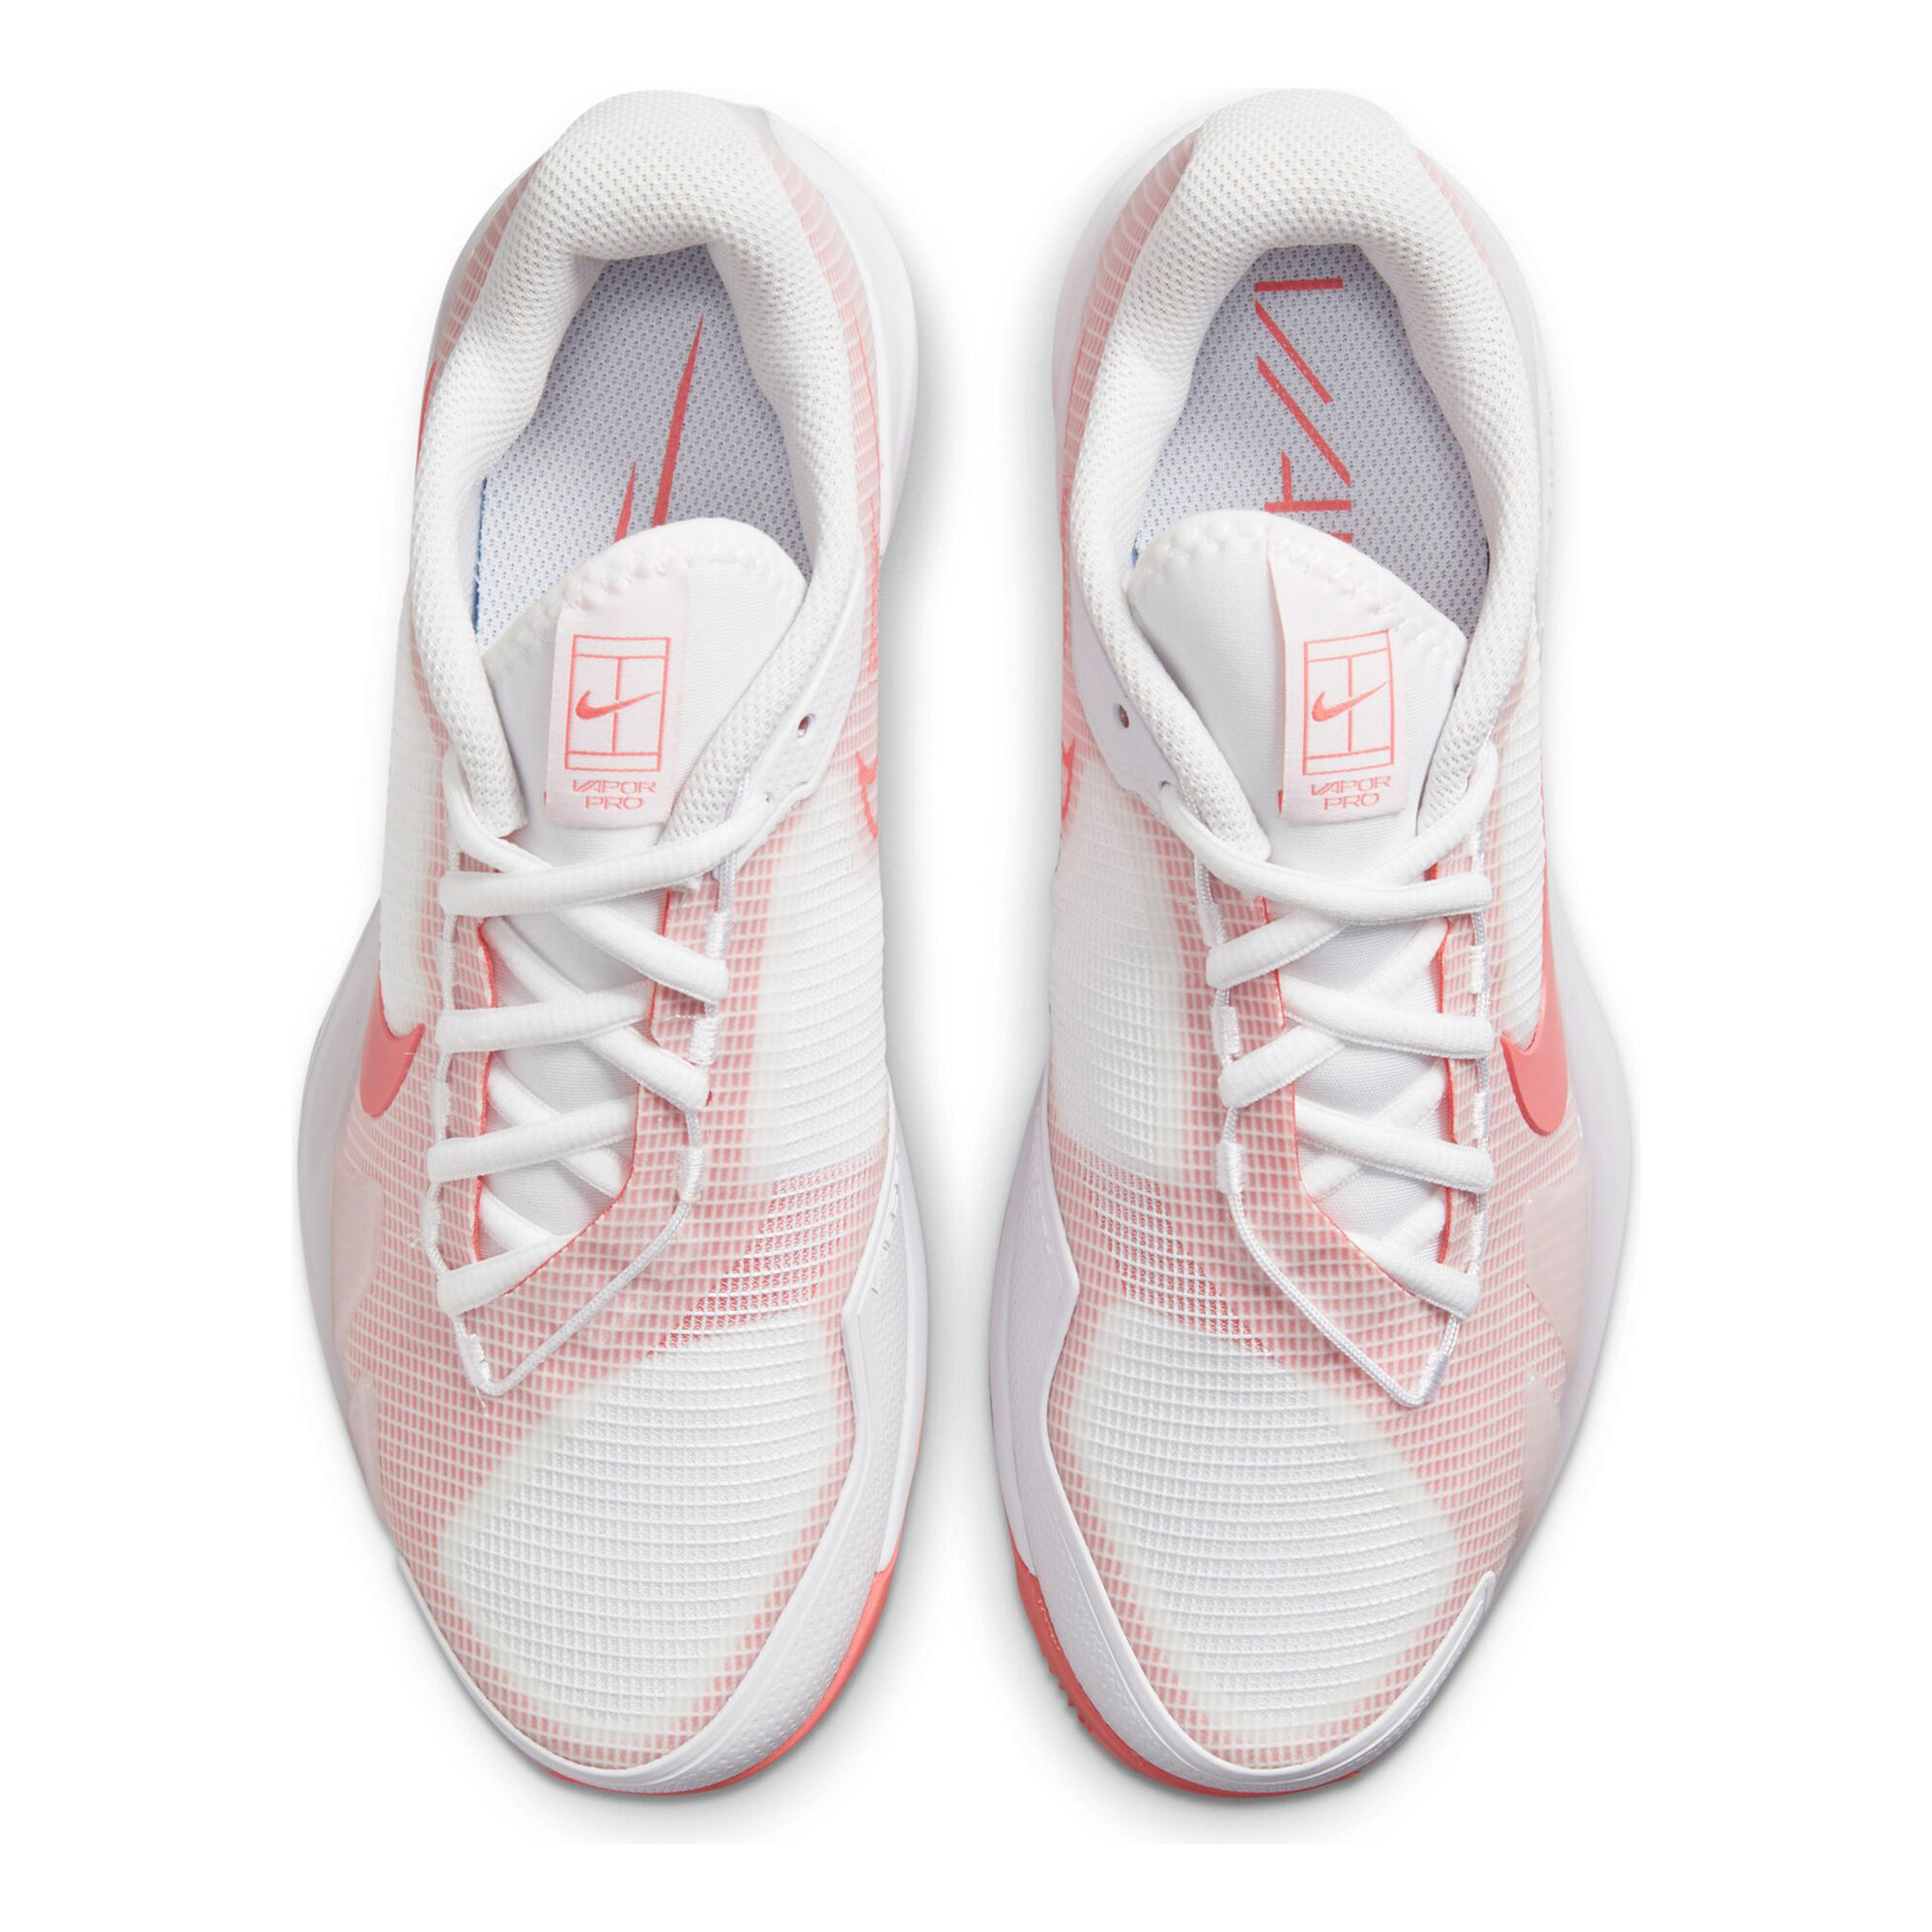 buy Nike Air Zoom Vapor Pro Clay Court Shoe Women - Ecru, Apricot ...